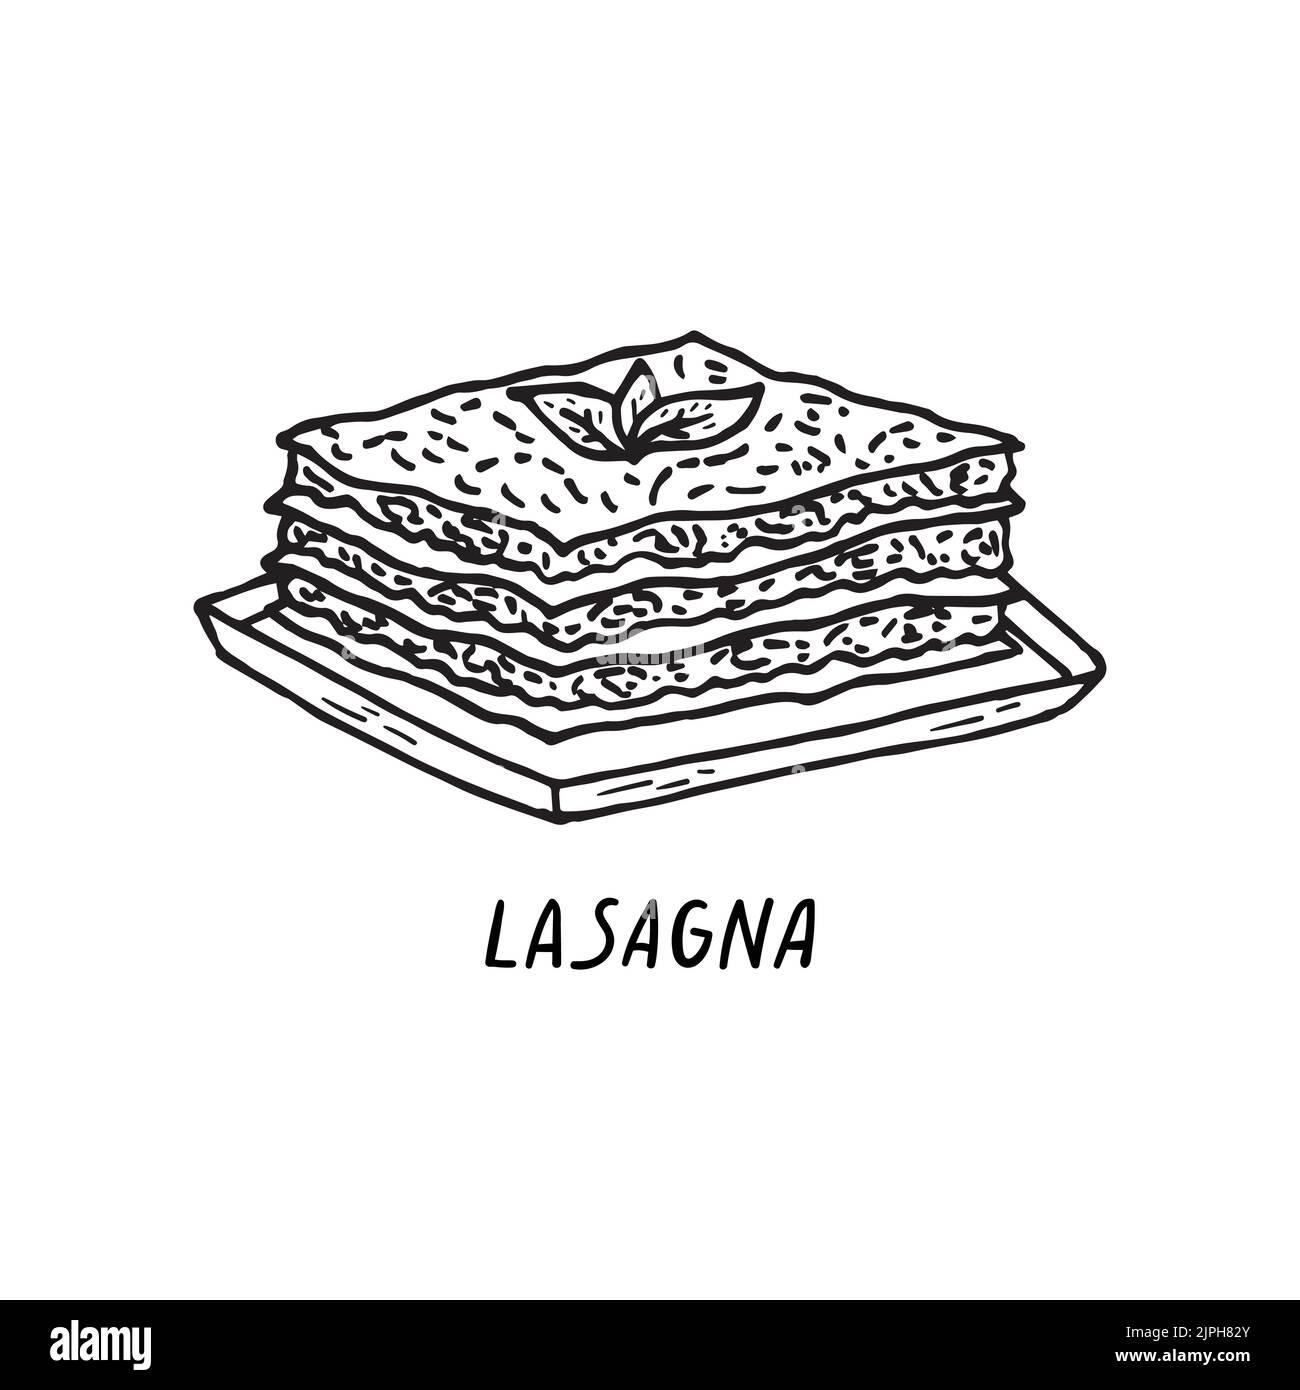 Vektor Handgezeichnete Illustration der italienischen Küche. Lasagne. Stock Vektor